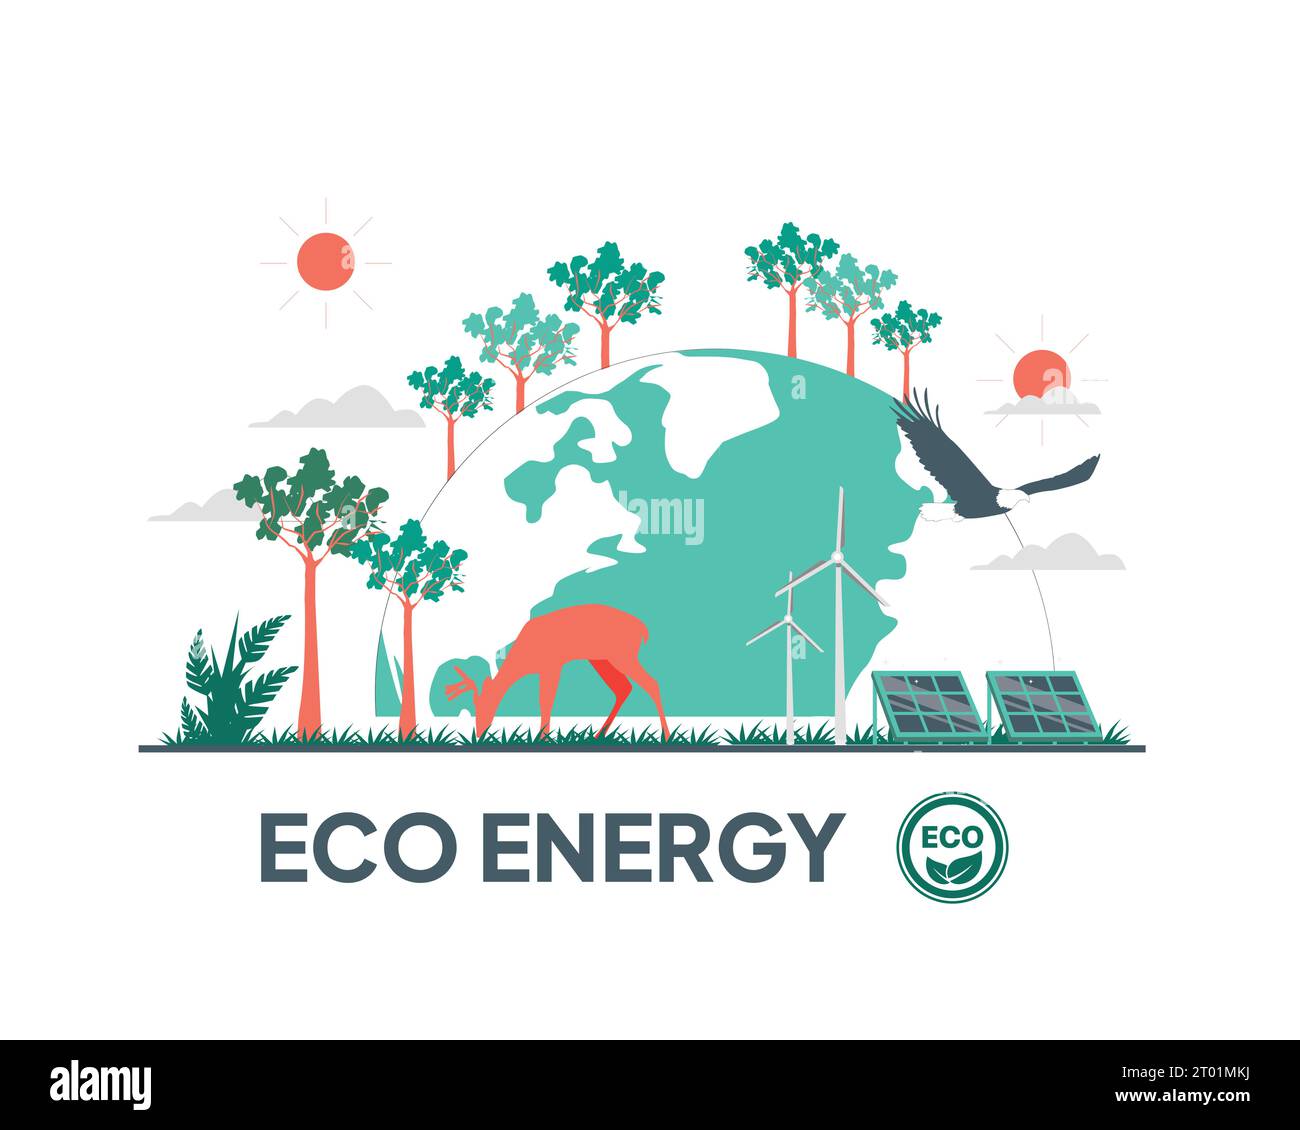 Scritta Eco ENERGY Design piatto per pratiche di sostenibilità fine concetto di protezione dell'ambiente. Illustrazione Vettoriale